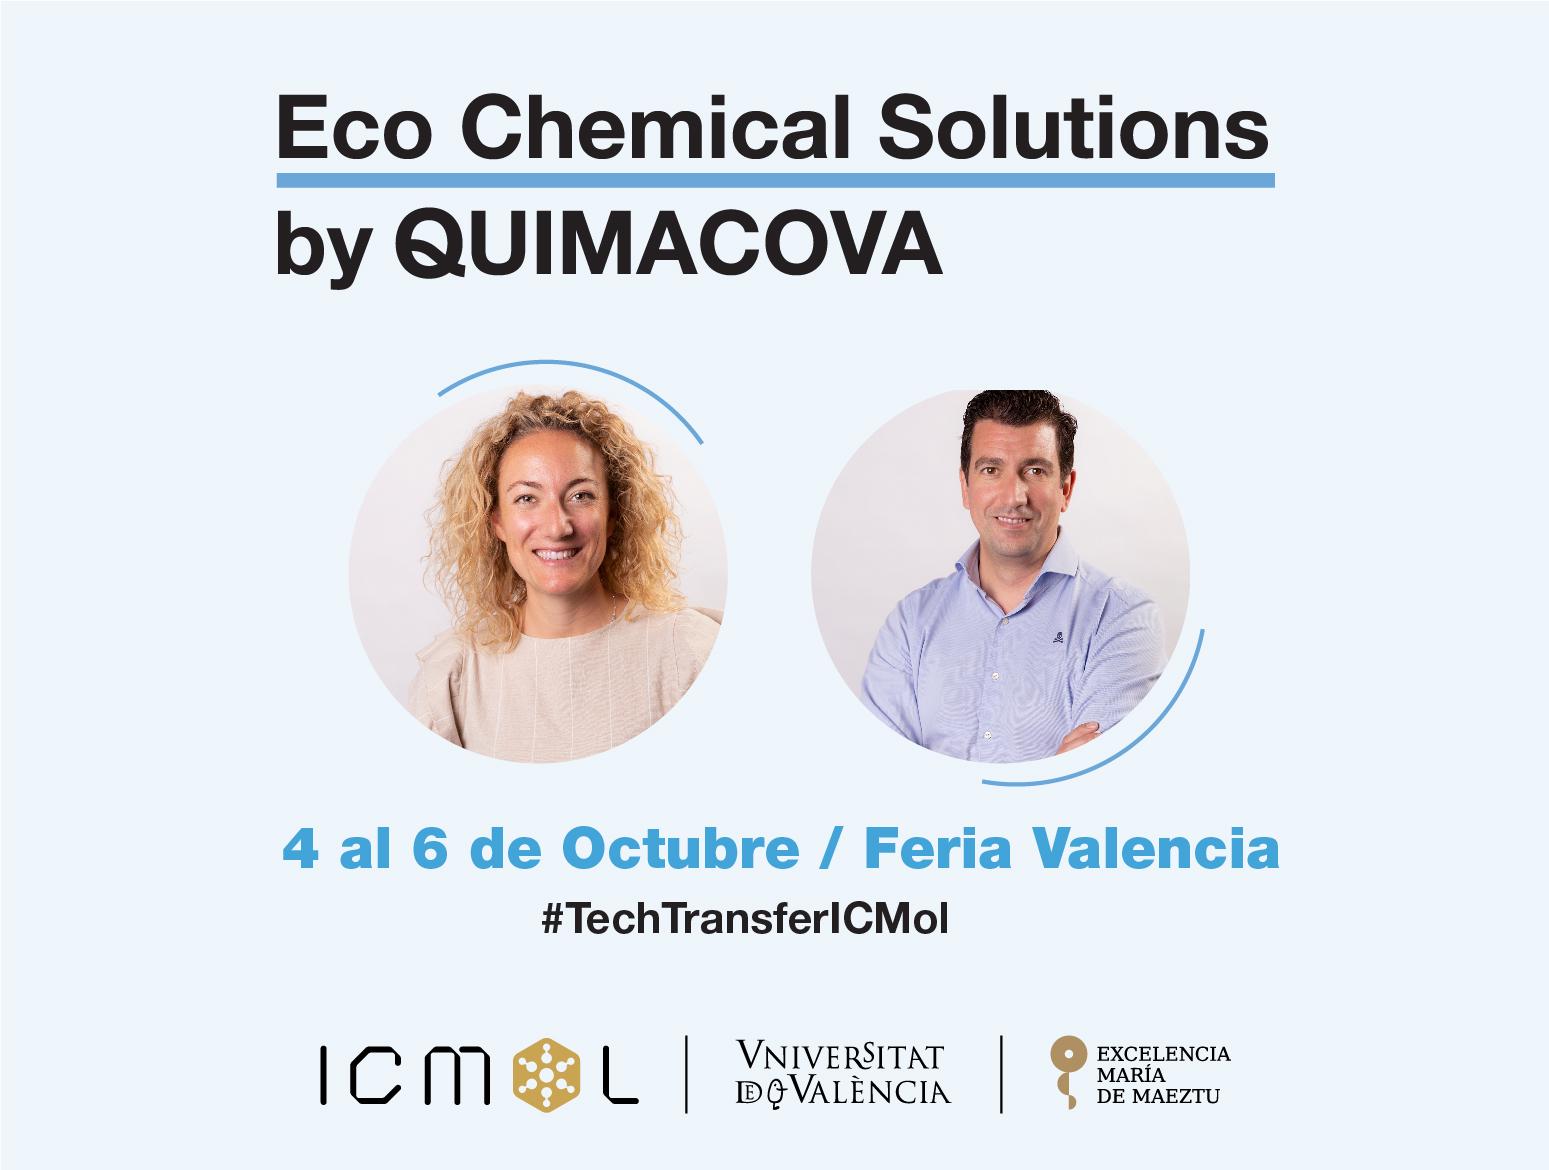 ICMol | I edición del Salón Eco Chemical Solutions (EChs) en Feria Valencia 